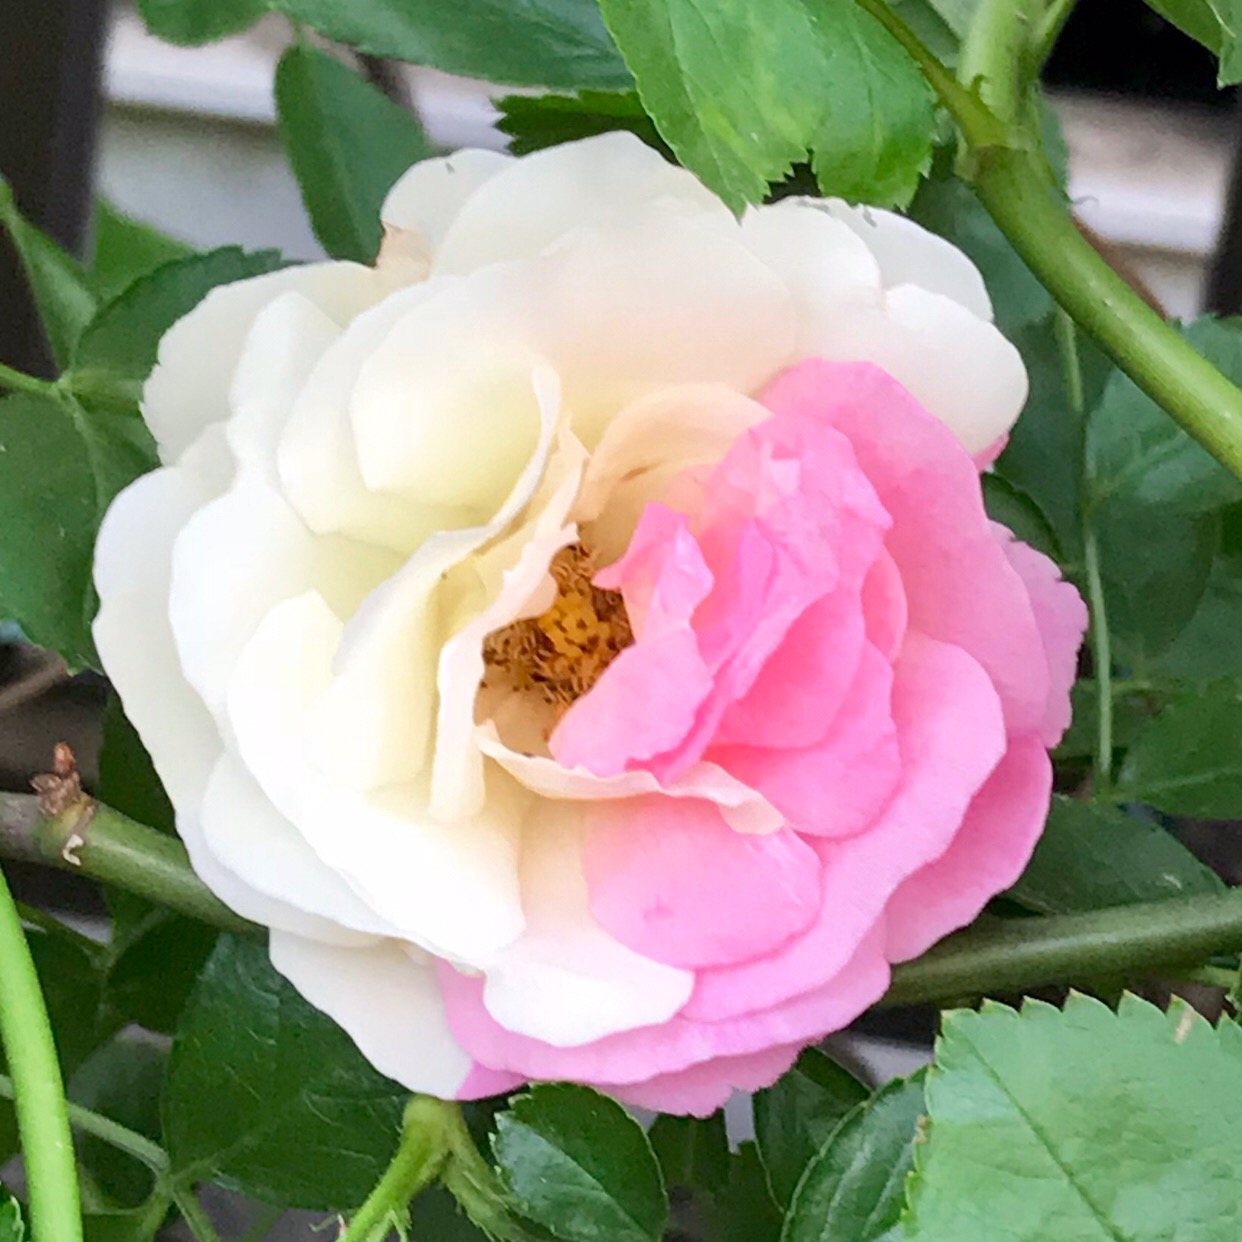 なんと真っ白な薔薇のサマースノーに、かわいい半分ピンク色の花が咲き